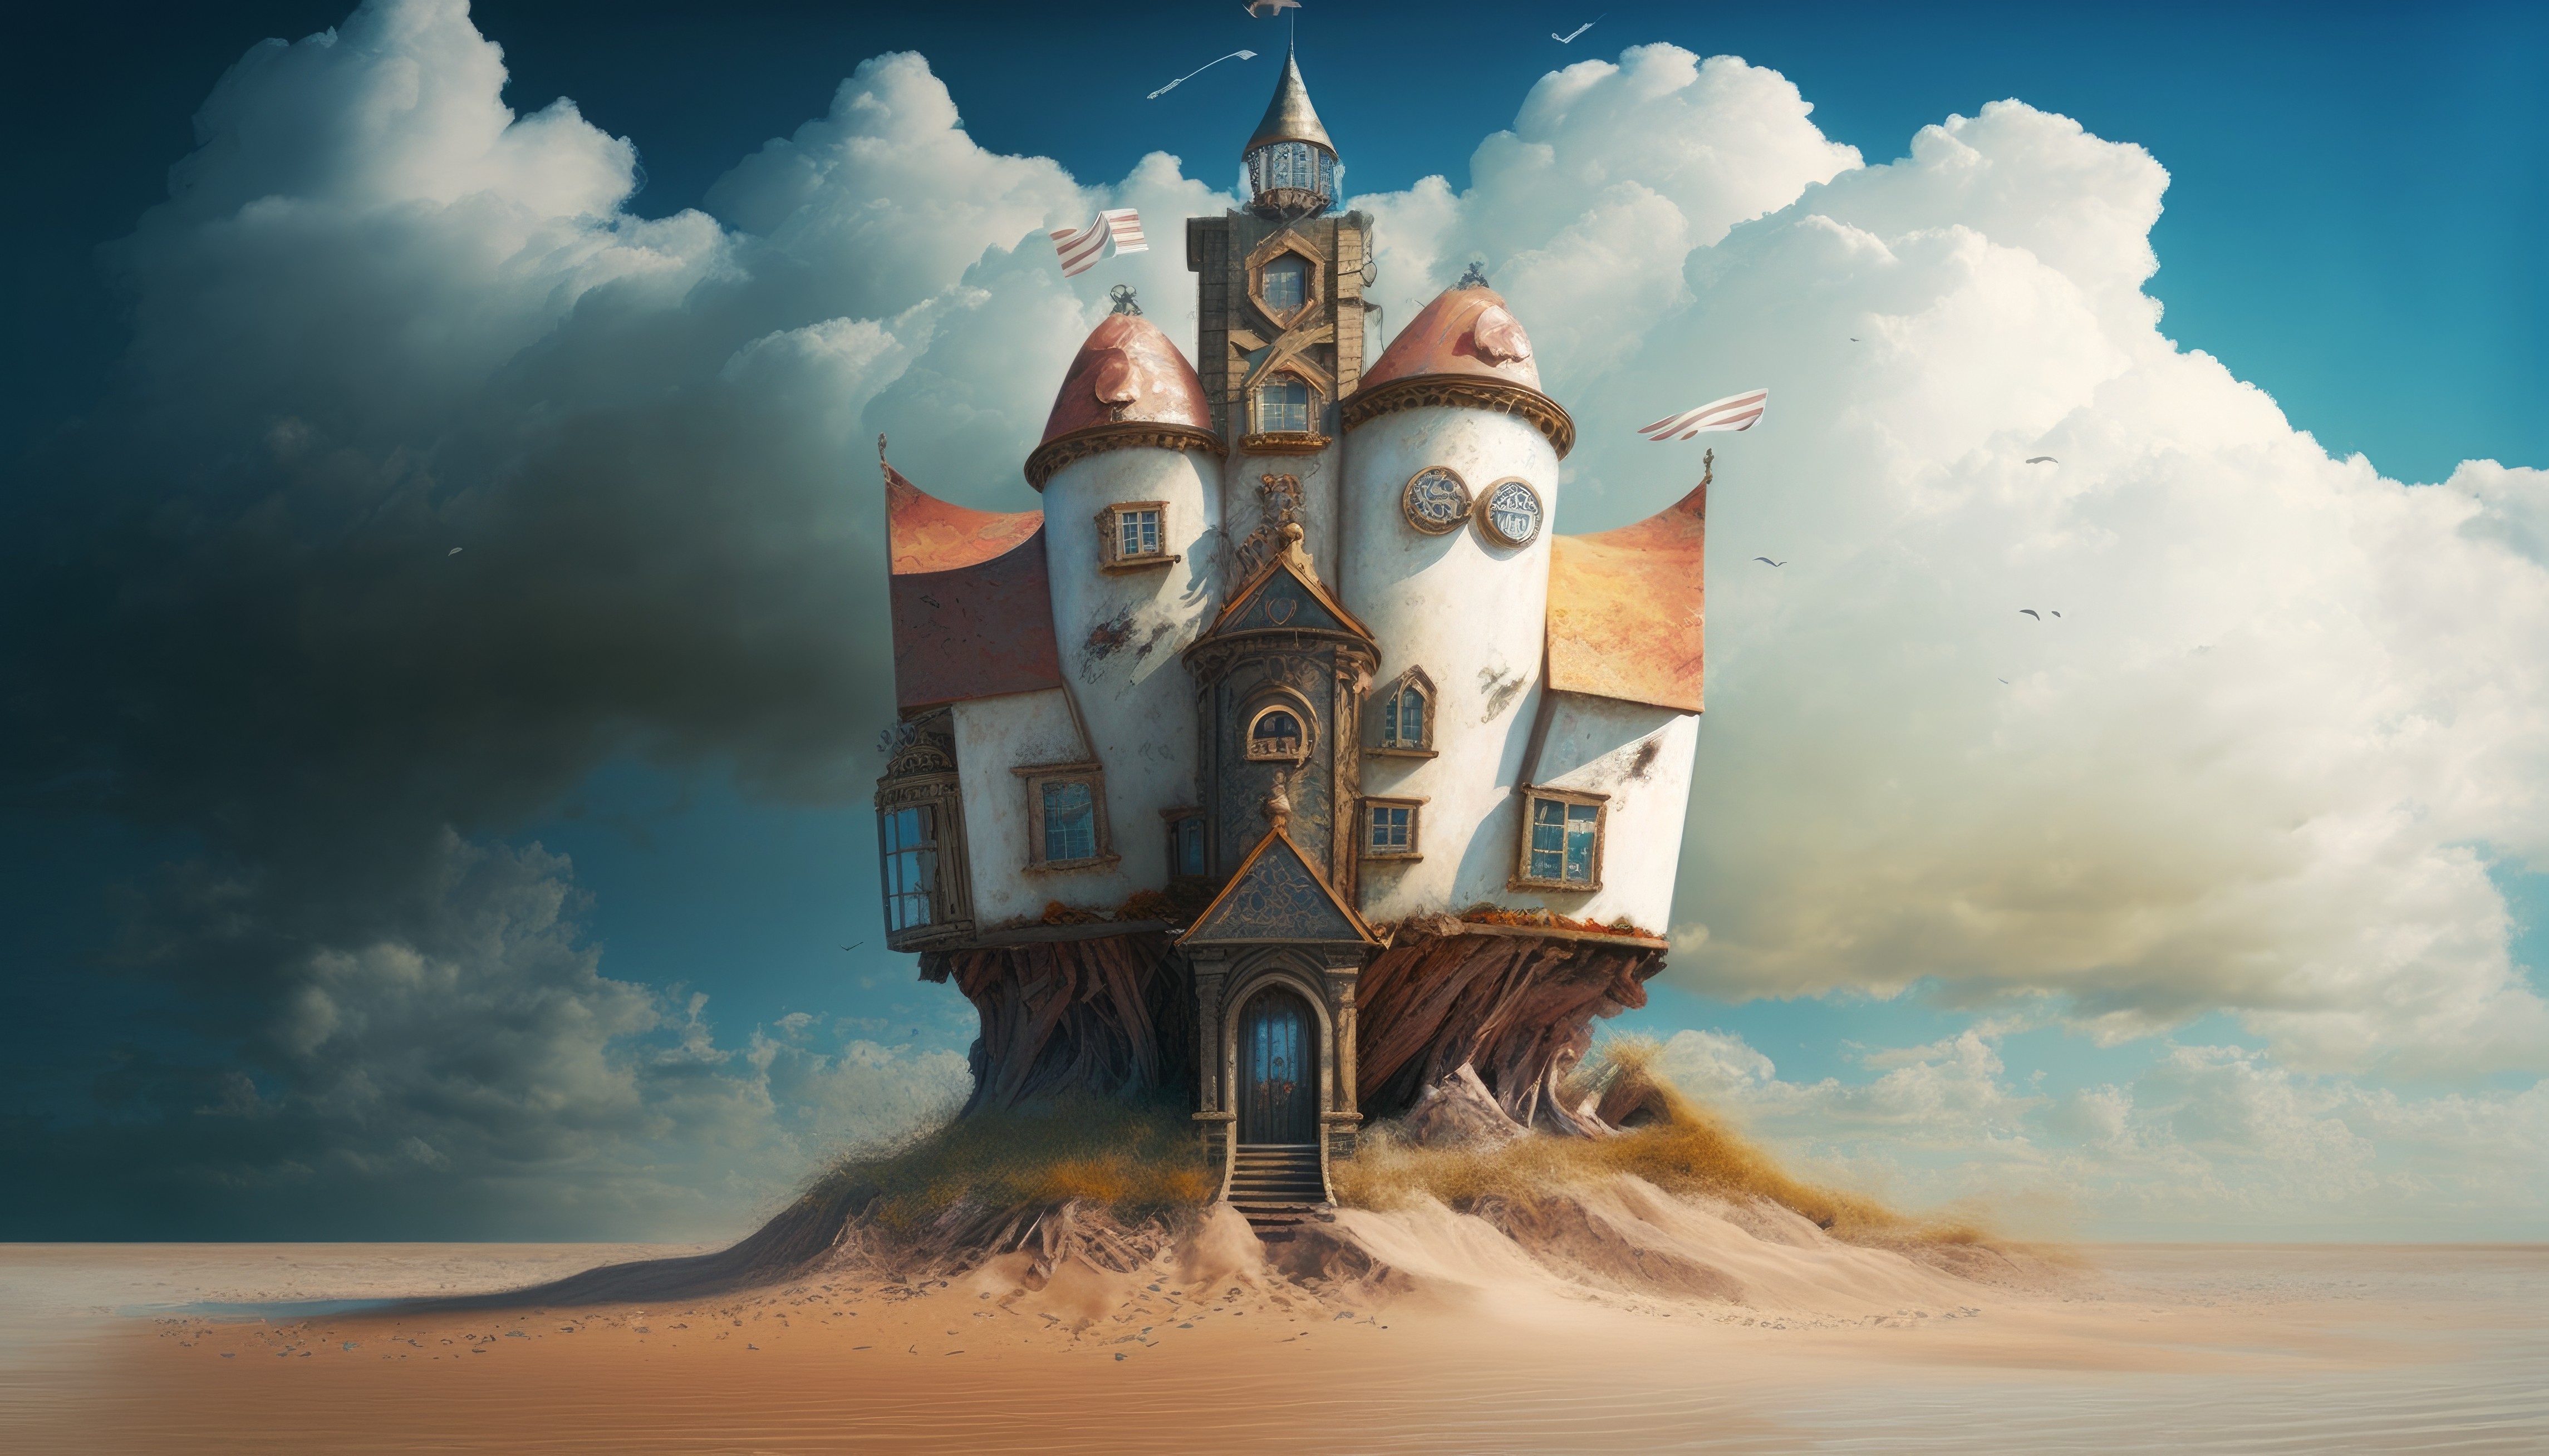 Ai Art Clouds Beach Castle Surreal Illustration Building 4579x2616